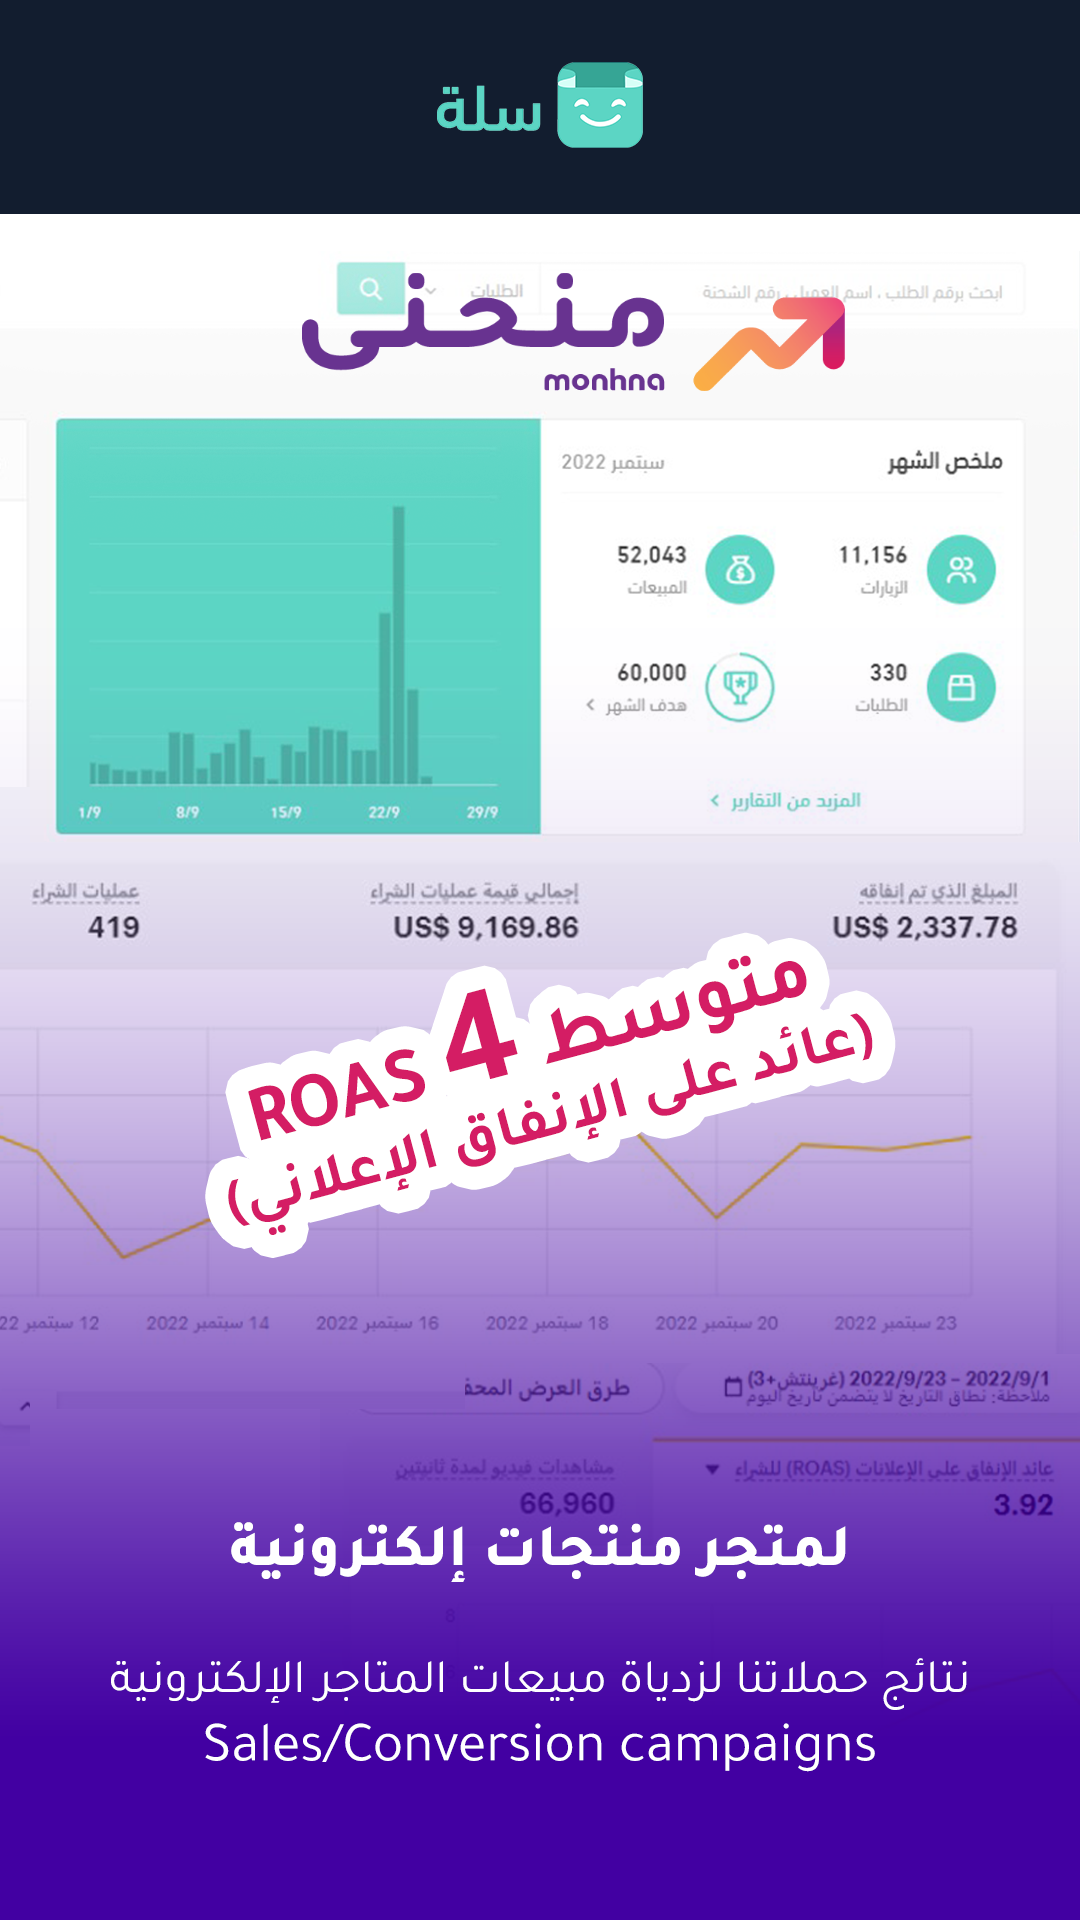 وصلنا لمتوسط 4 ROAS عائد على الإنفاق الإعلاني من خلال إدارتنا لحملات ممولة عبر سناب تشات وتيكتوك